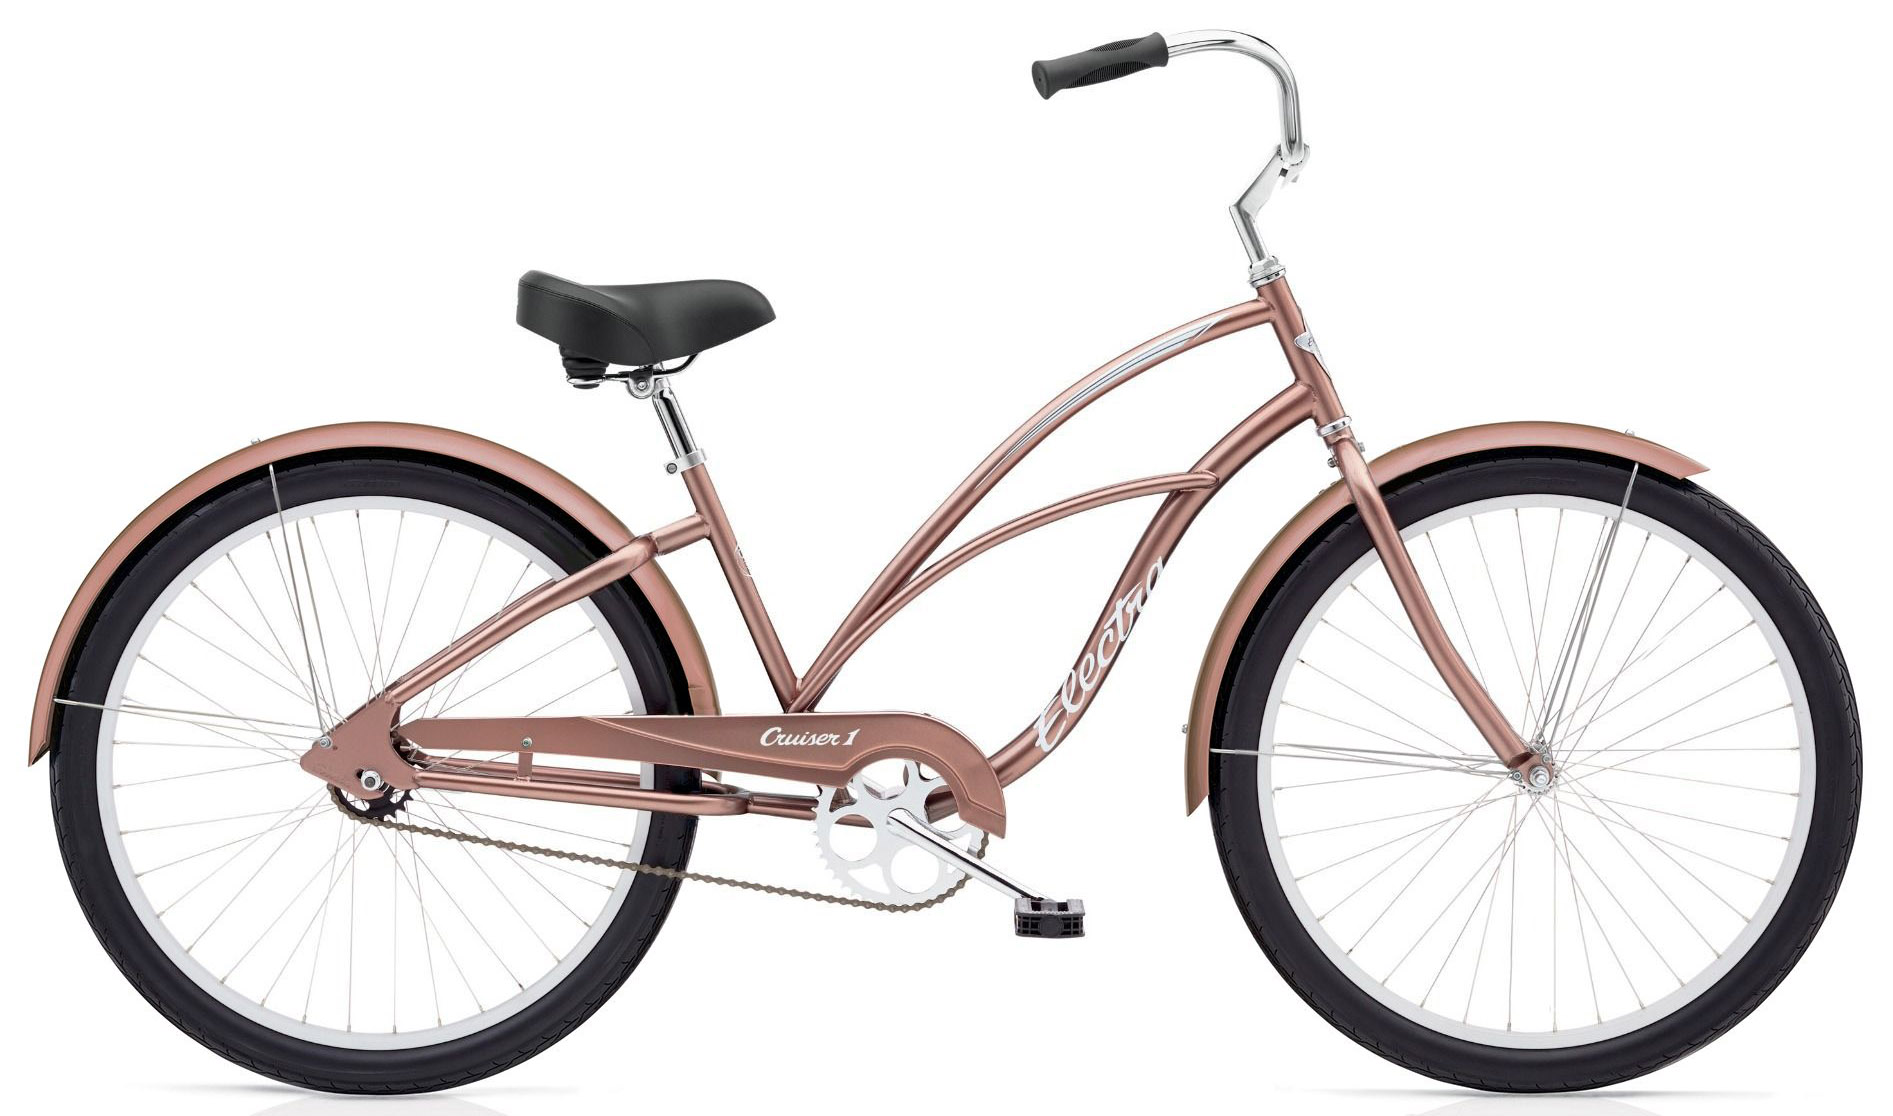  Отзывы о Женском велосипеде Electra Cruiser 1 Ladies 2020